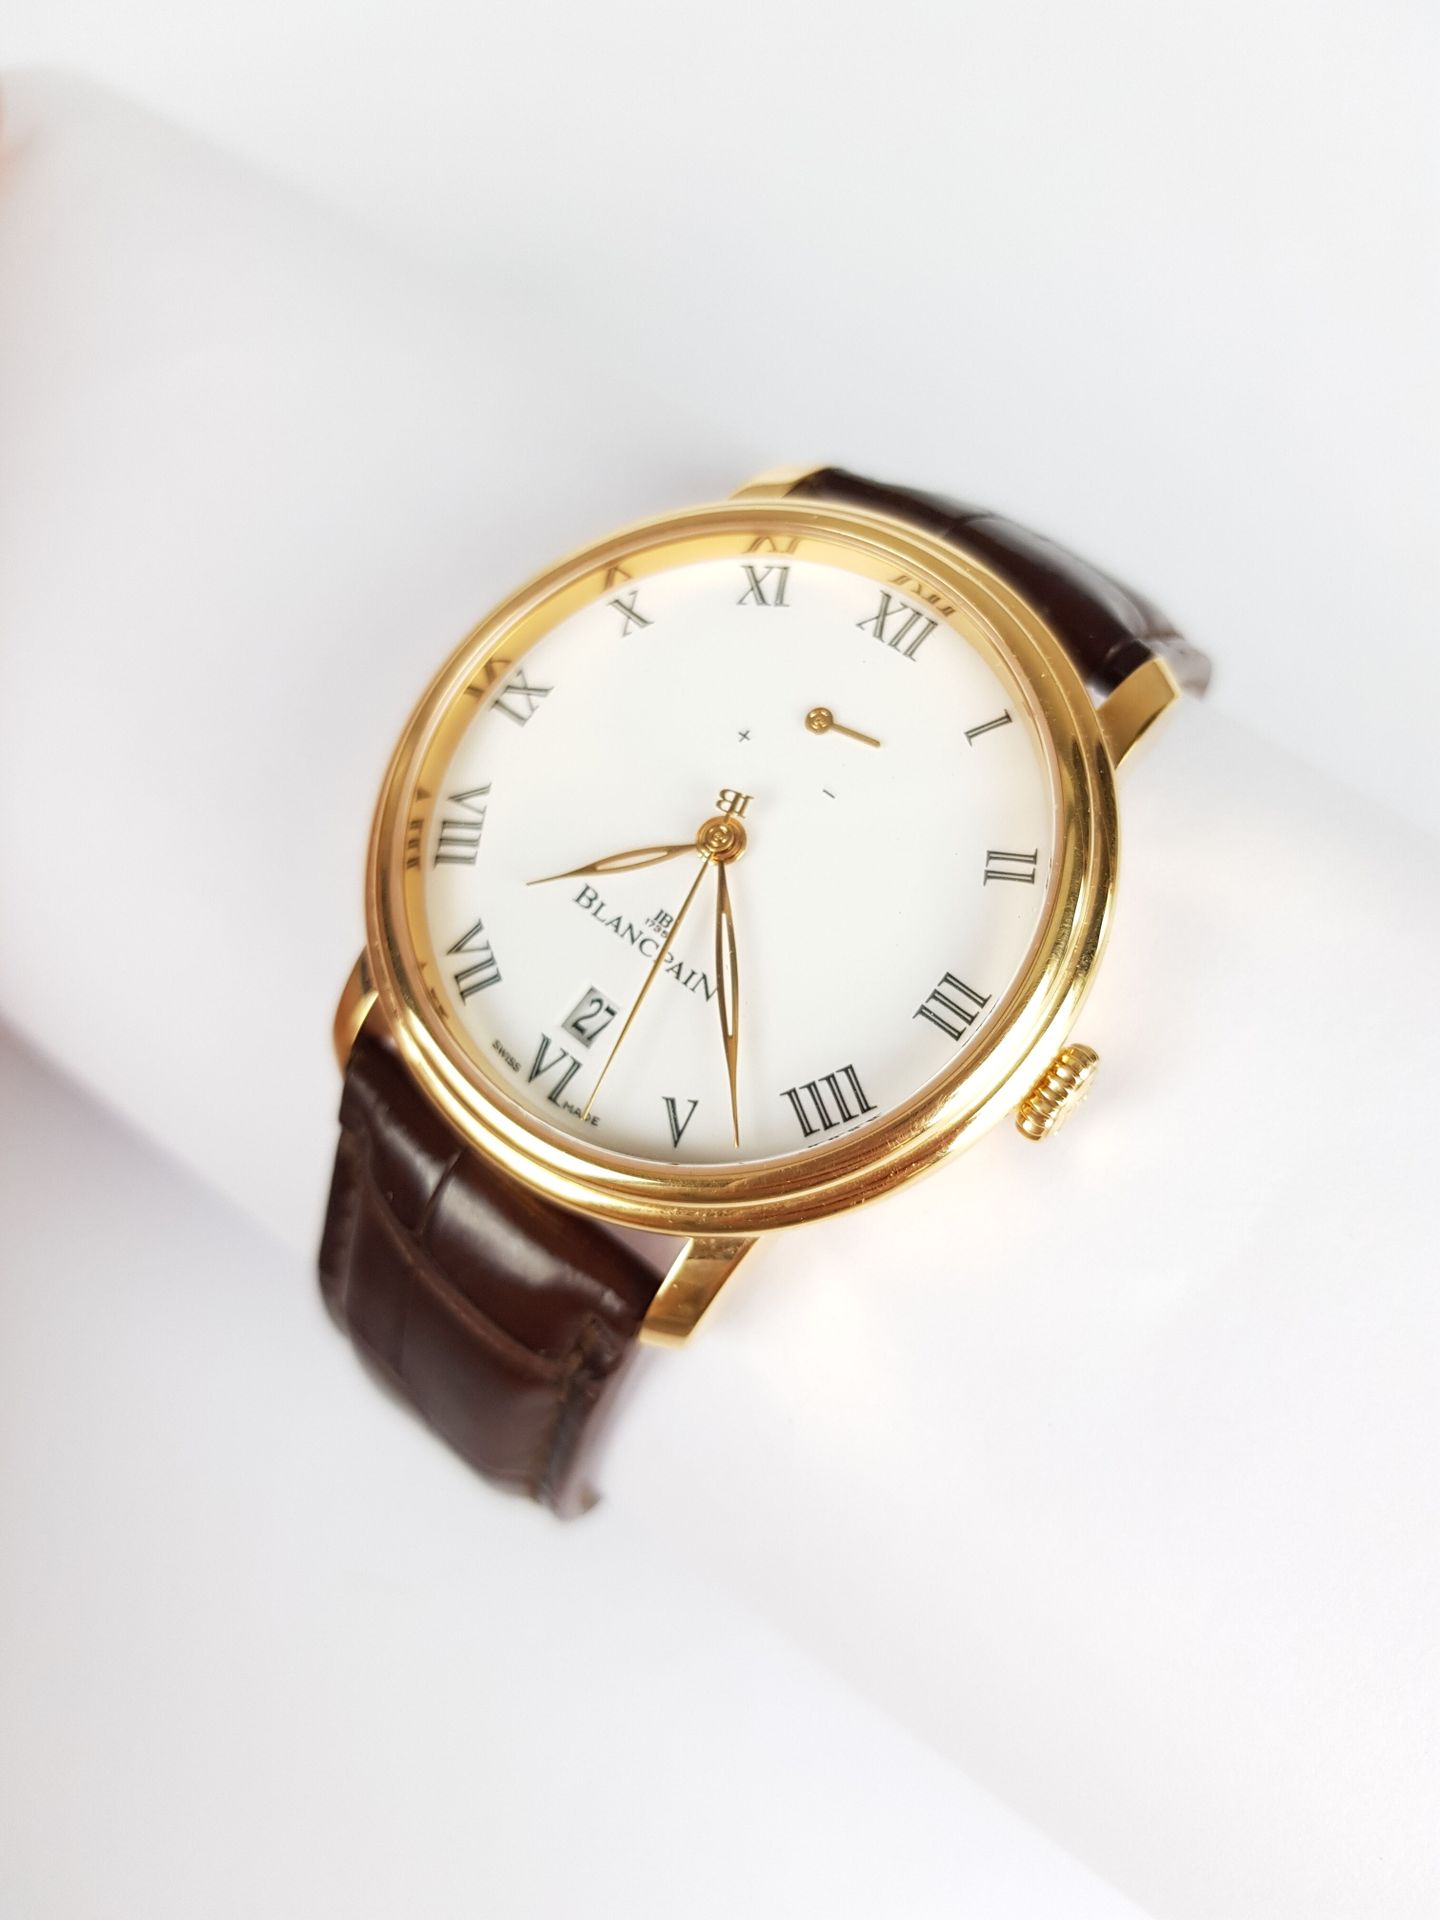 Null Precio inicial: 2 500 €.

BLANCPAIN

Serie limitada Villeret

Reloj de oro &hellip;